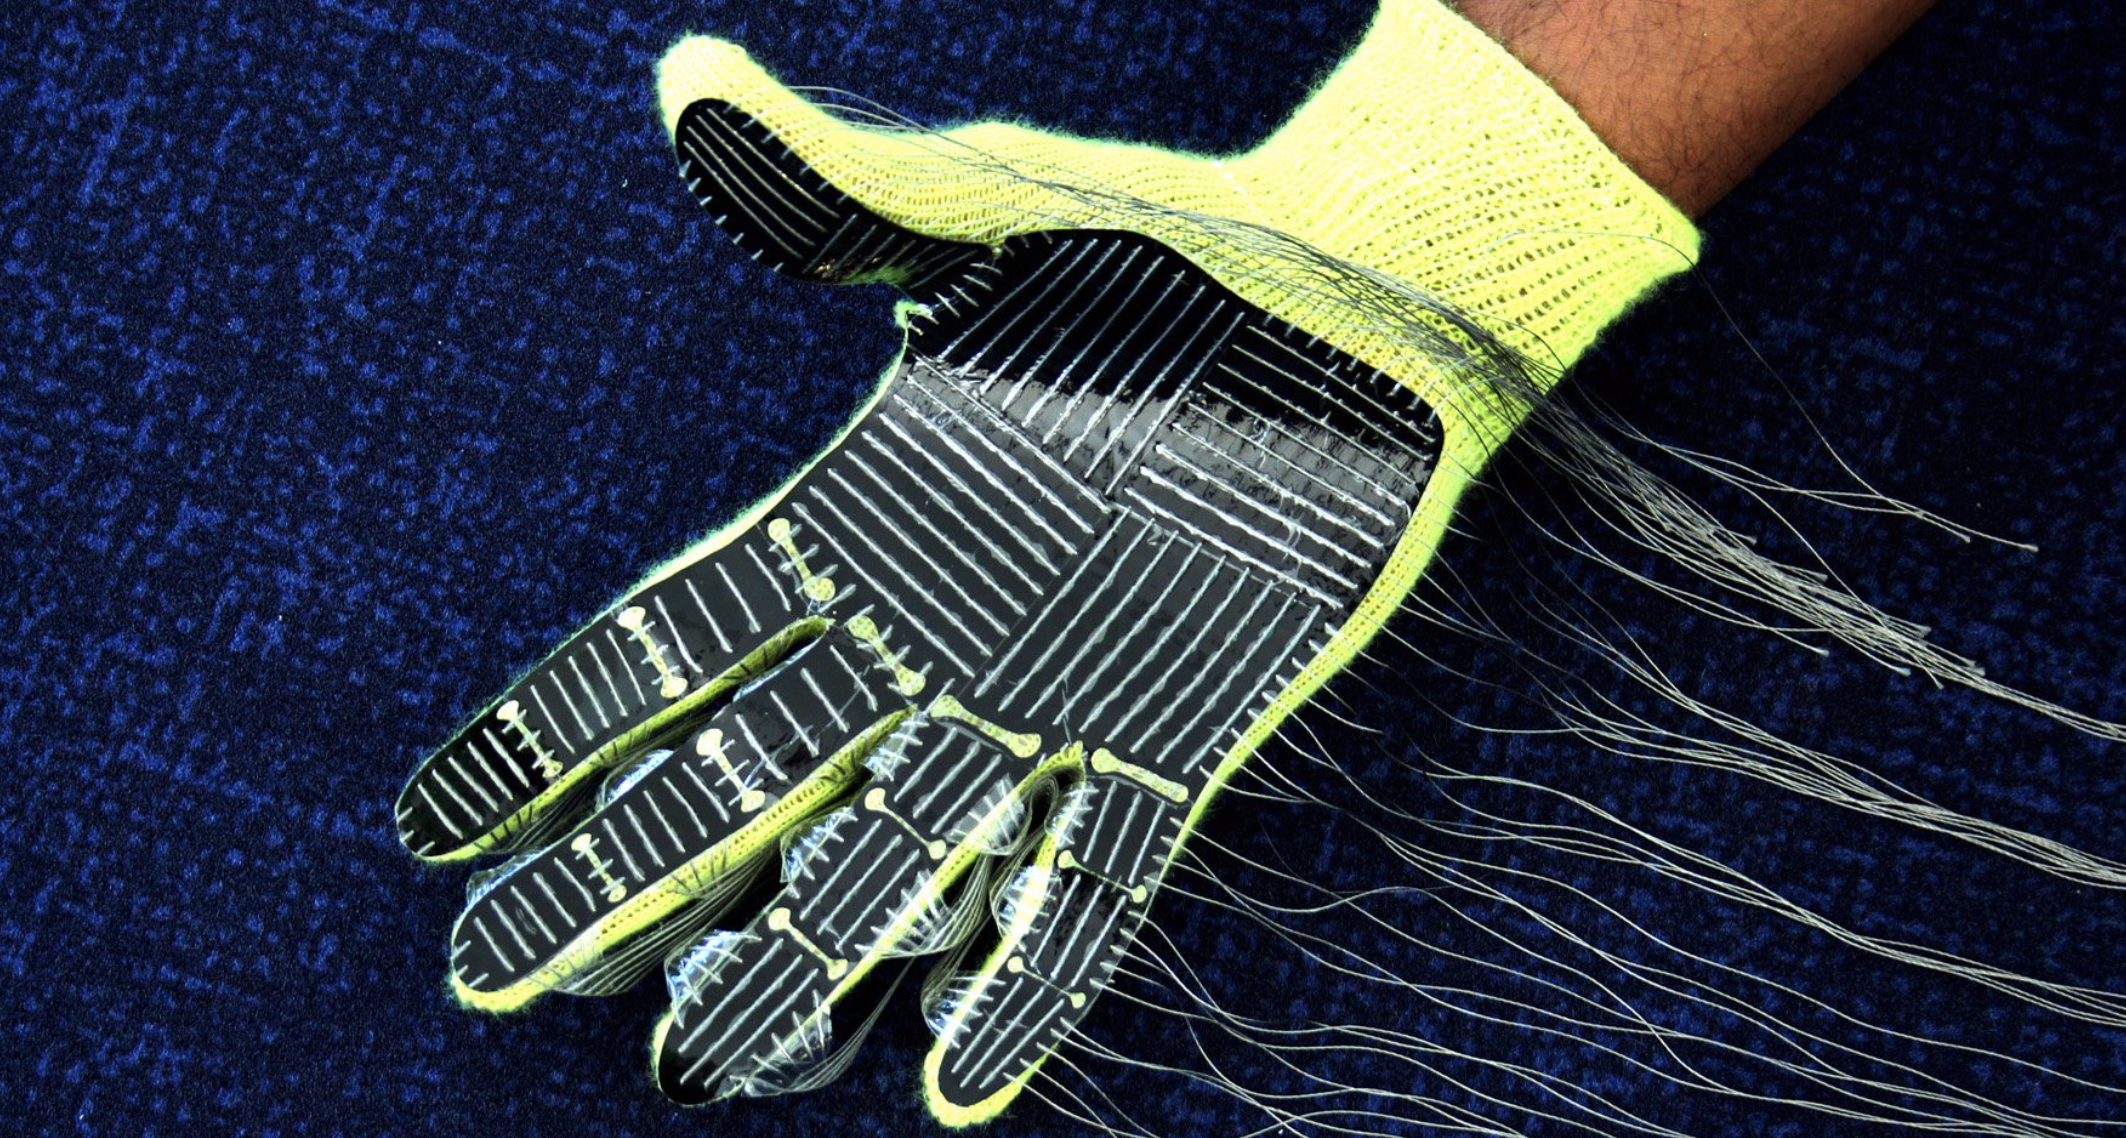 Sensor glove identifies objects